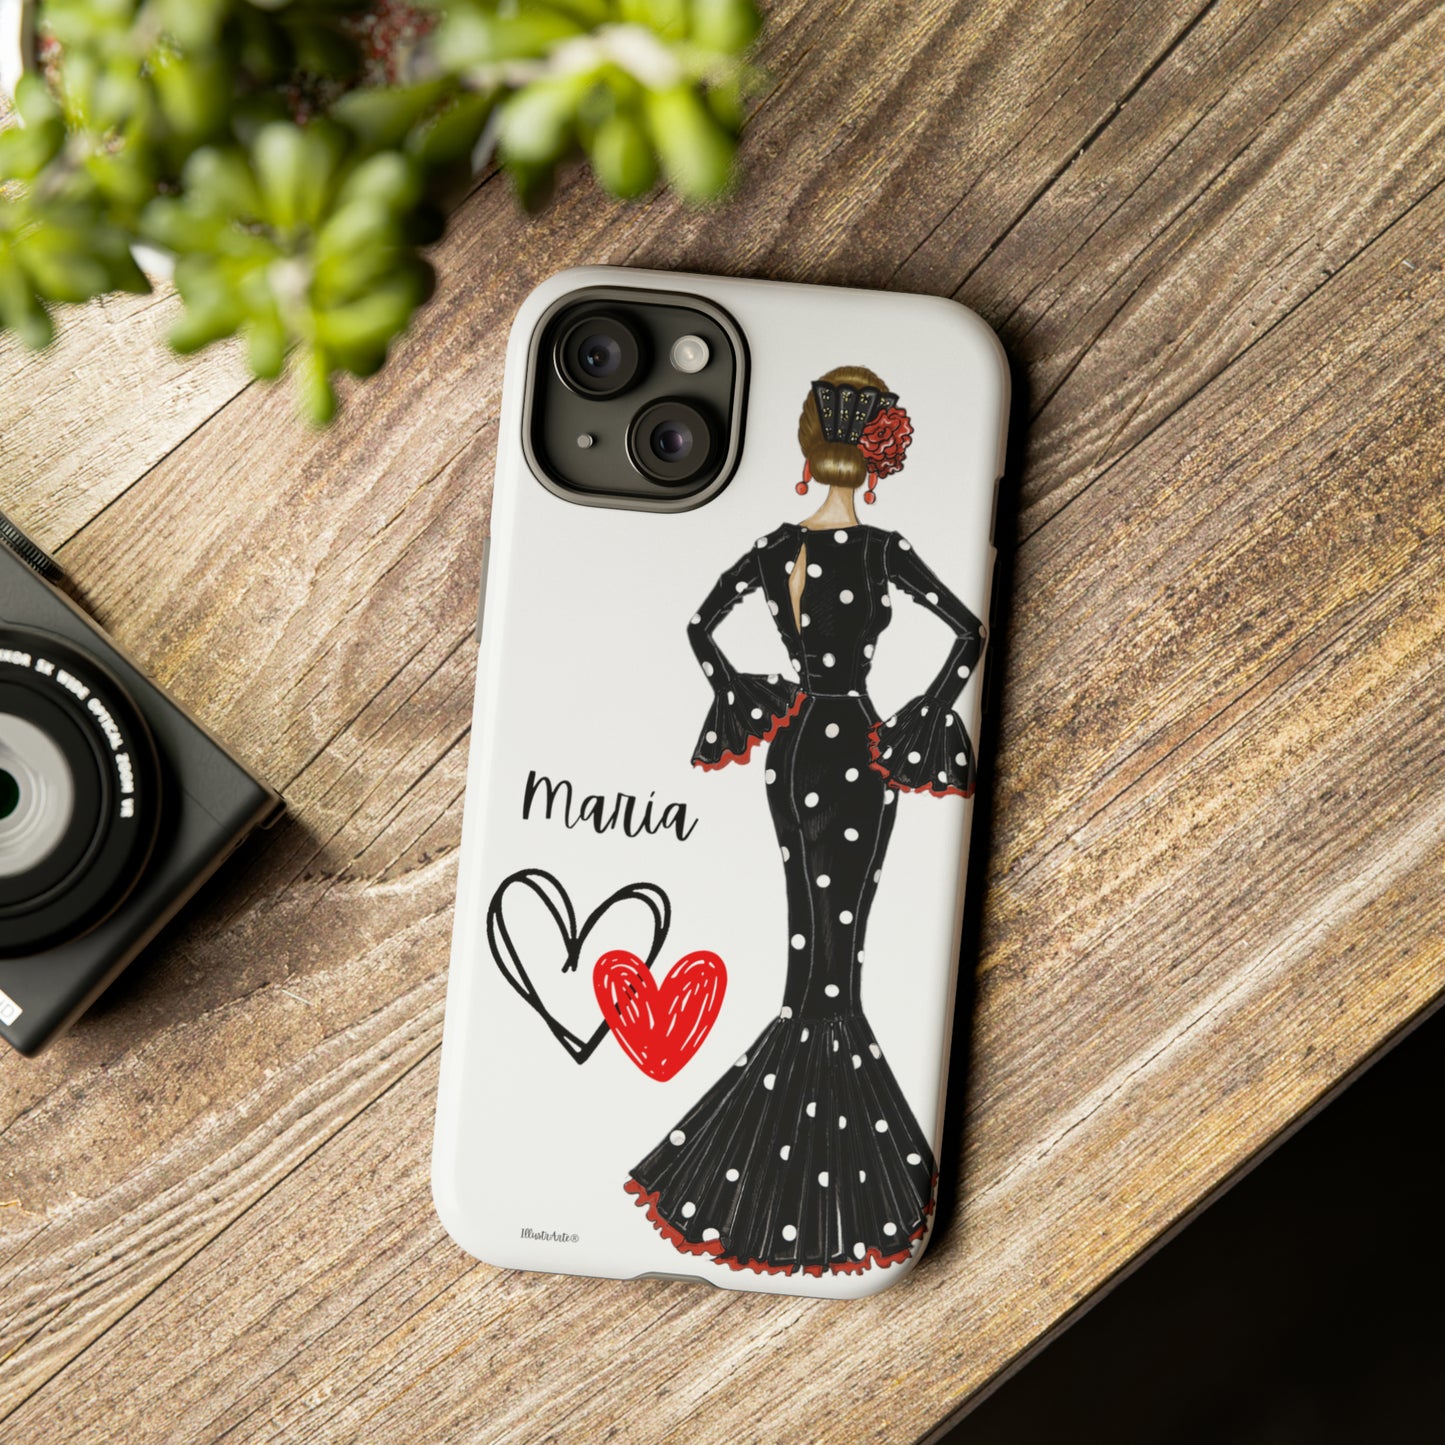 Funda de teléfono flamenca, rígida y resistente, blanca, personalizable para teléfono - Nuestra bailaora de flamenco María con un elegante vestido de lunares negros